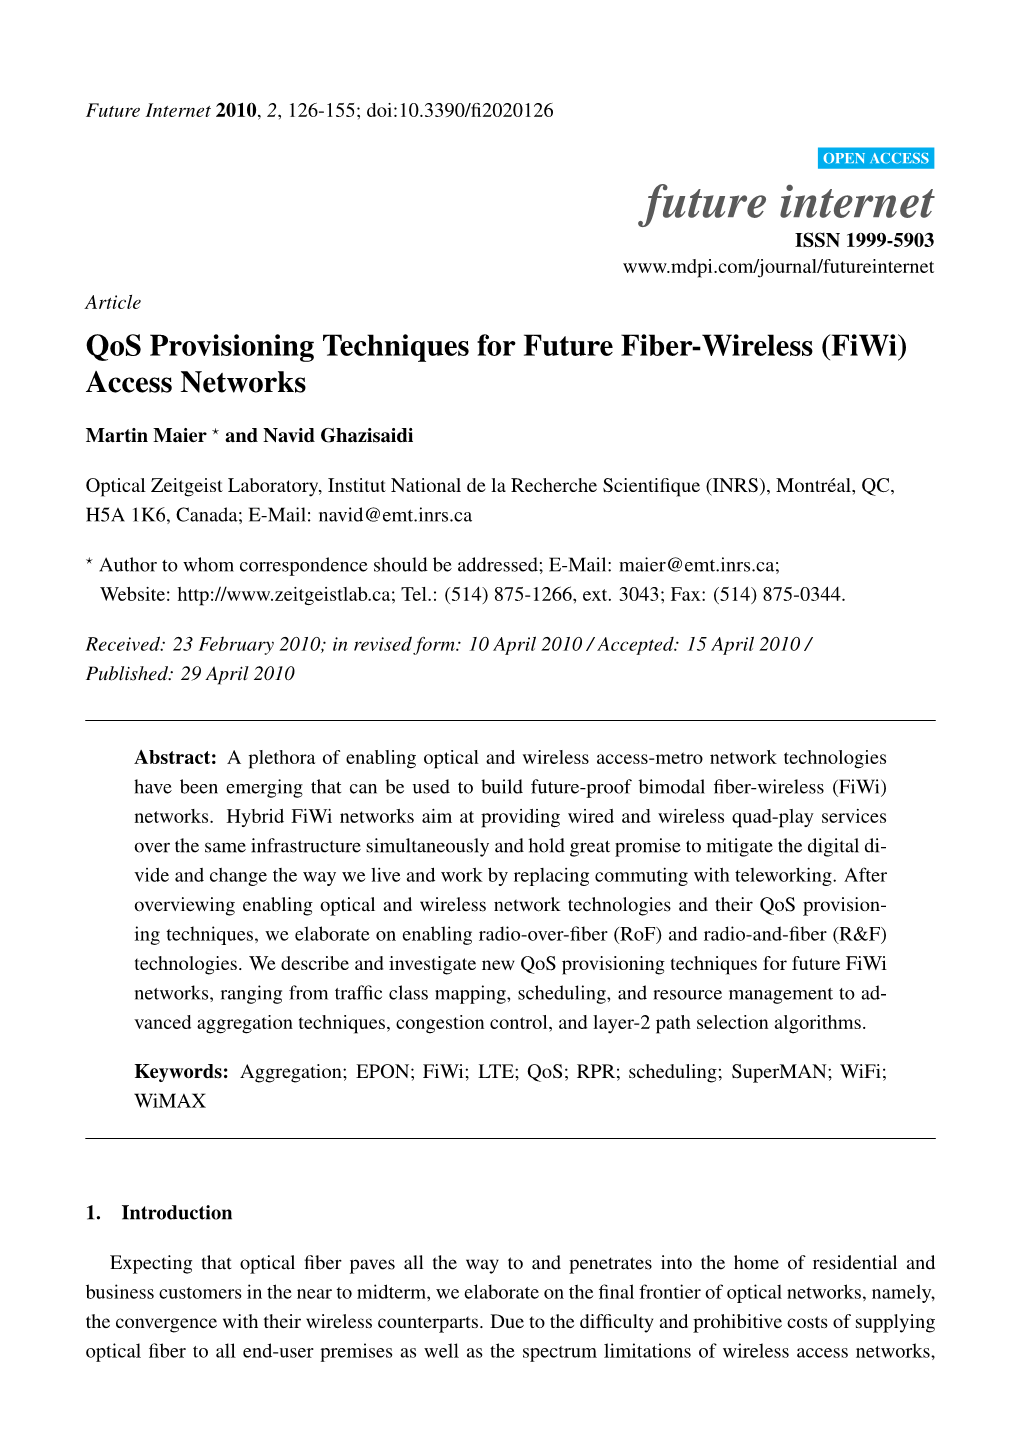 Qos Provisioning Techniques for Future Fiber-Wireless (Fiwi) Access Networks